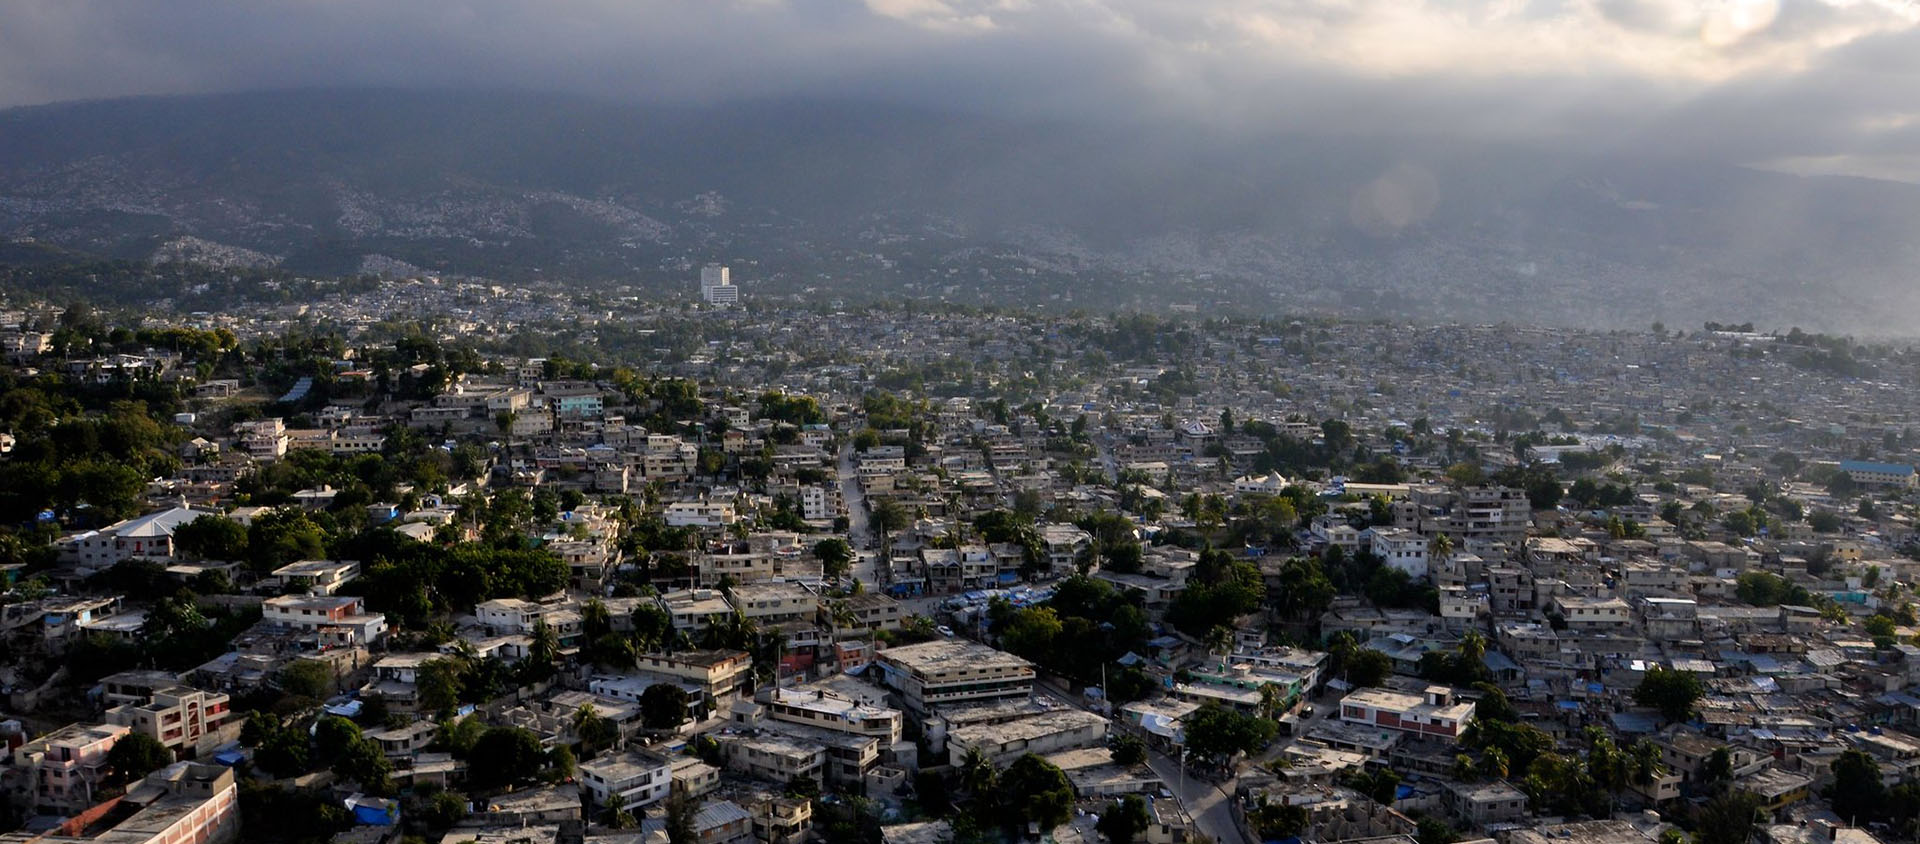 Les sept religieux ont été enlevés dans la banlieue de Port-Au-Prince | © Flickr/BBC World Service/CC BY-NC 2.0